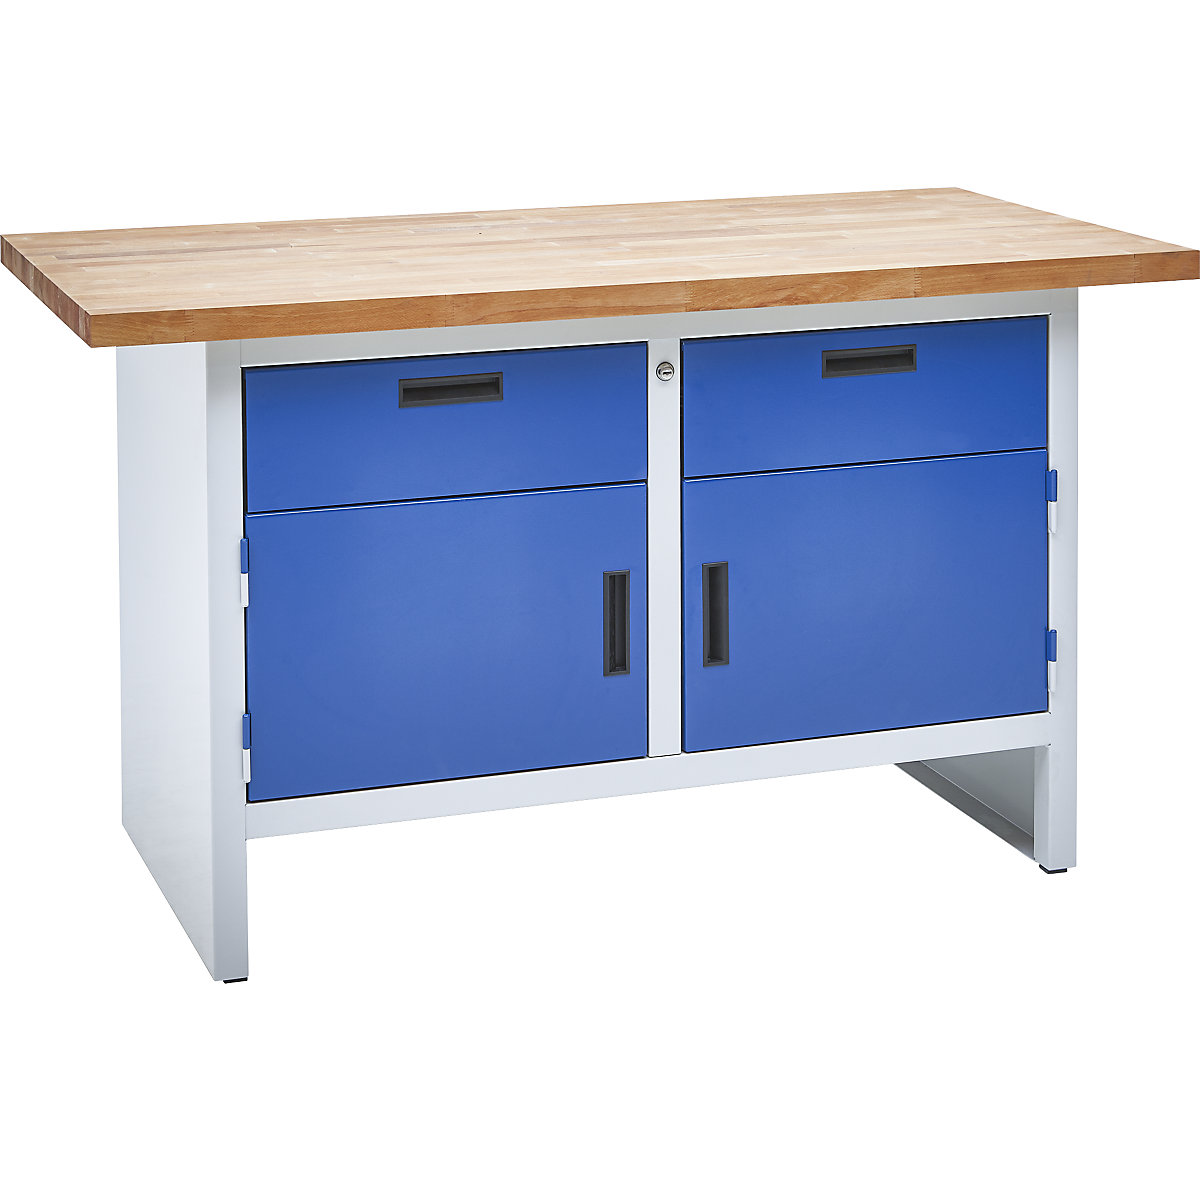 Banco de trabajo mesa de trabajo ganchos de mesa taller de cajones azul